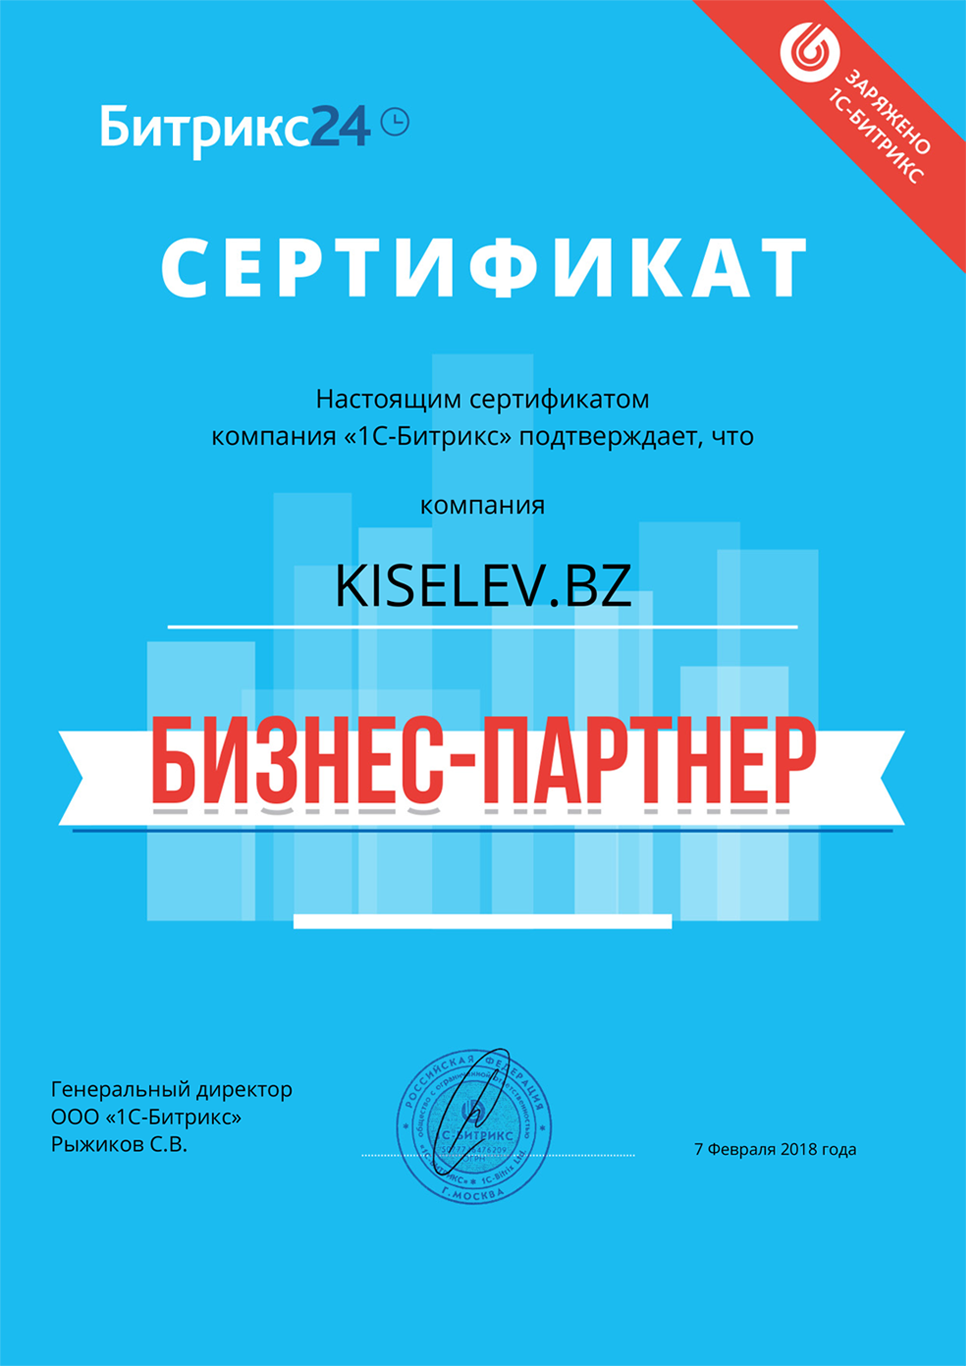 Сертификат партнёра по АМОСРМ в Перми